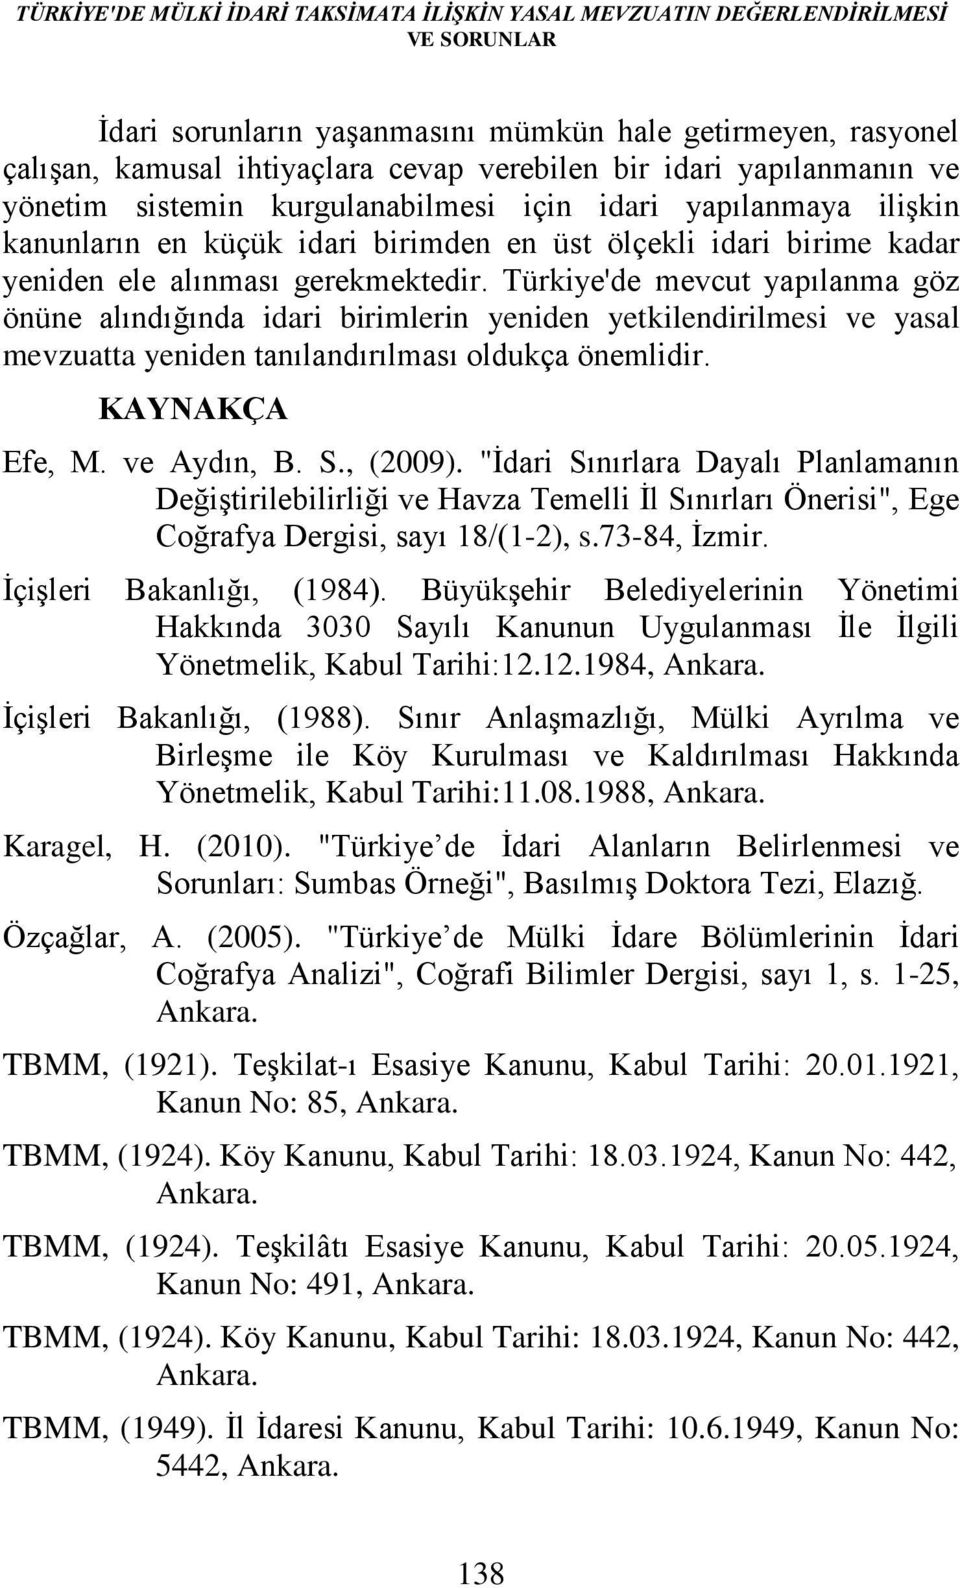 Türkiye'de mevcut yapılanma göz önüne alındığında idari birimlerin yeniden yetkilendirilmesi ve yasal mevzuatta yeniden tanılandırılması oldukça önemlidir. KAYNAKÇA Efe, M. ve Aydın, B. S., (2009).